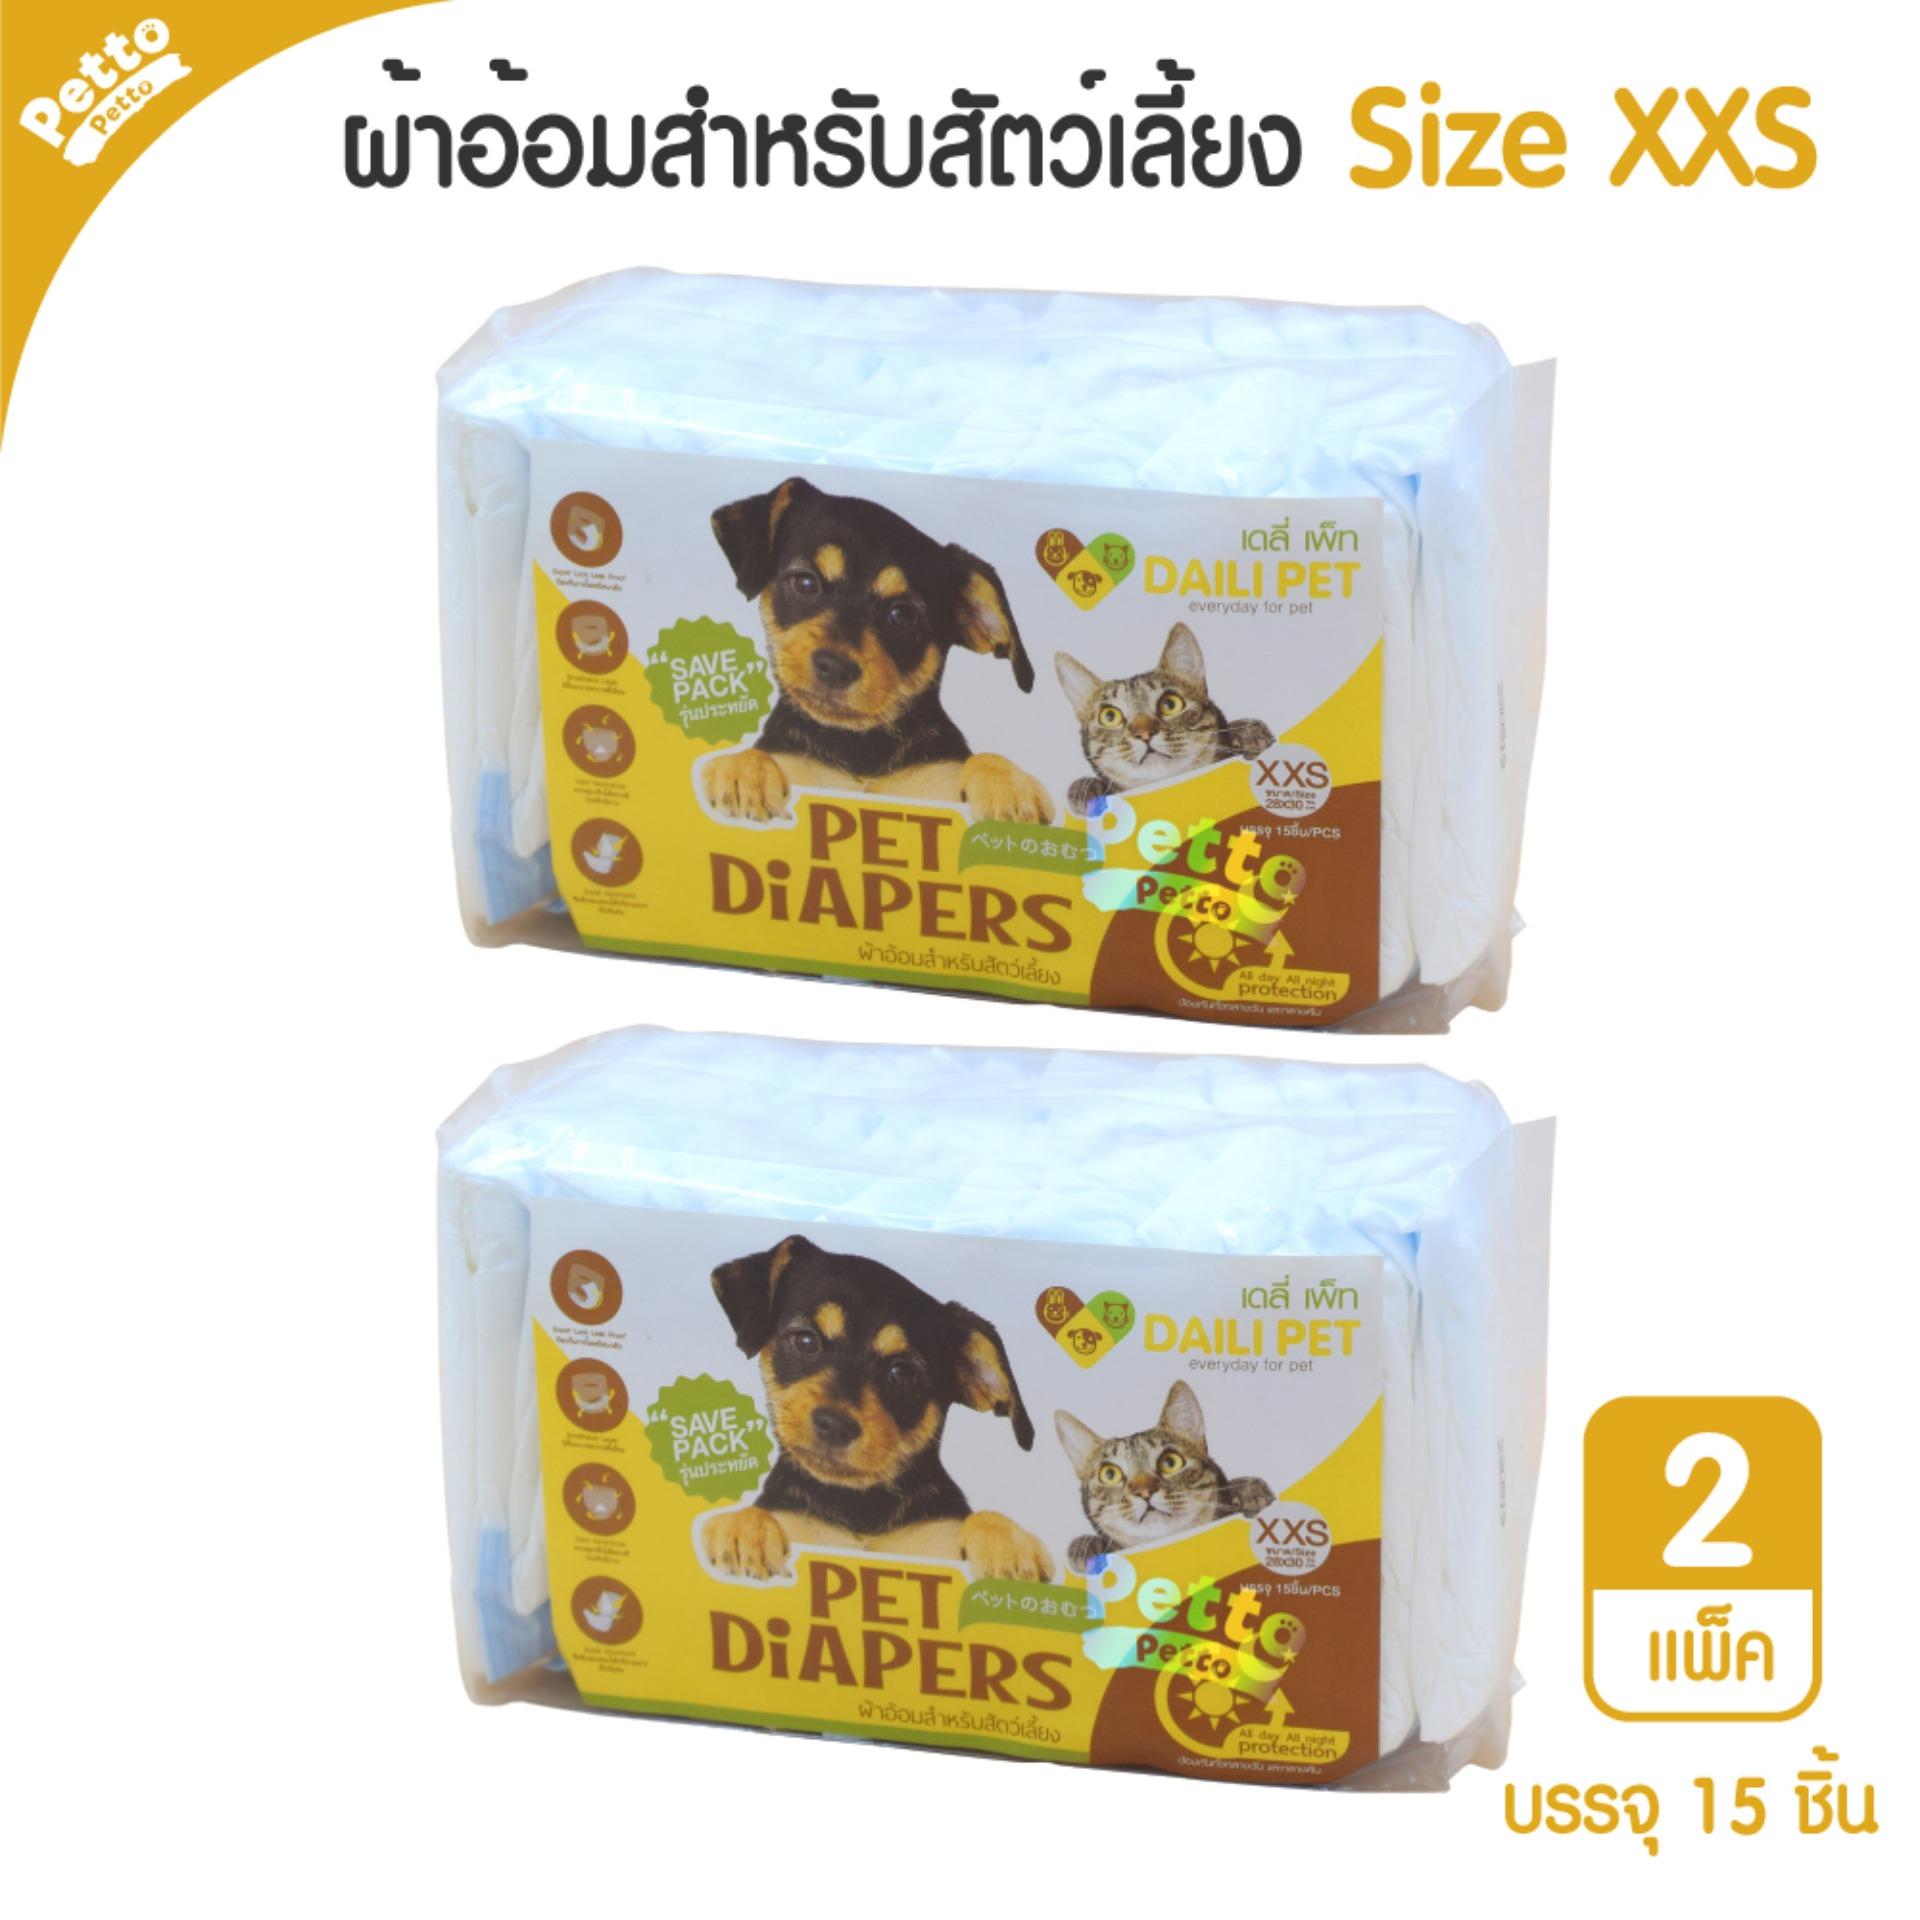 Daili Pet Diapers ผ้าอ้อมสุนัข แมว ผ้าอ้อมสำหรับสัตว์เลี้ยง Size XXS (15 ชิ้น/แพ็ค) - 2 ชิ้น